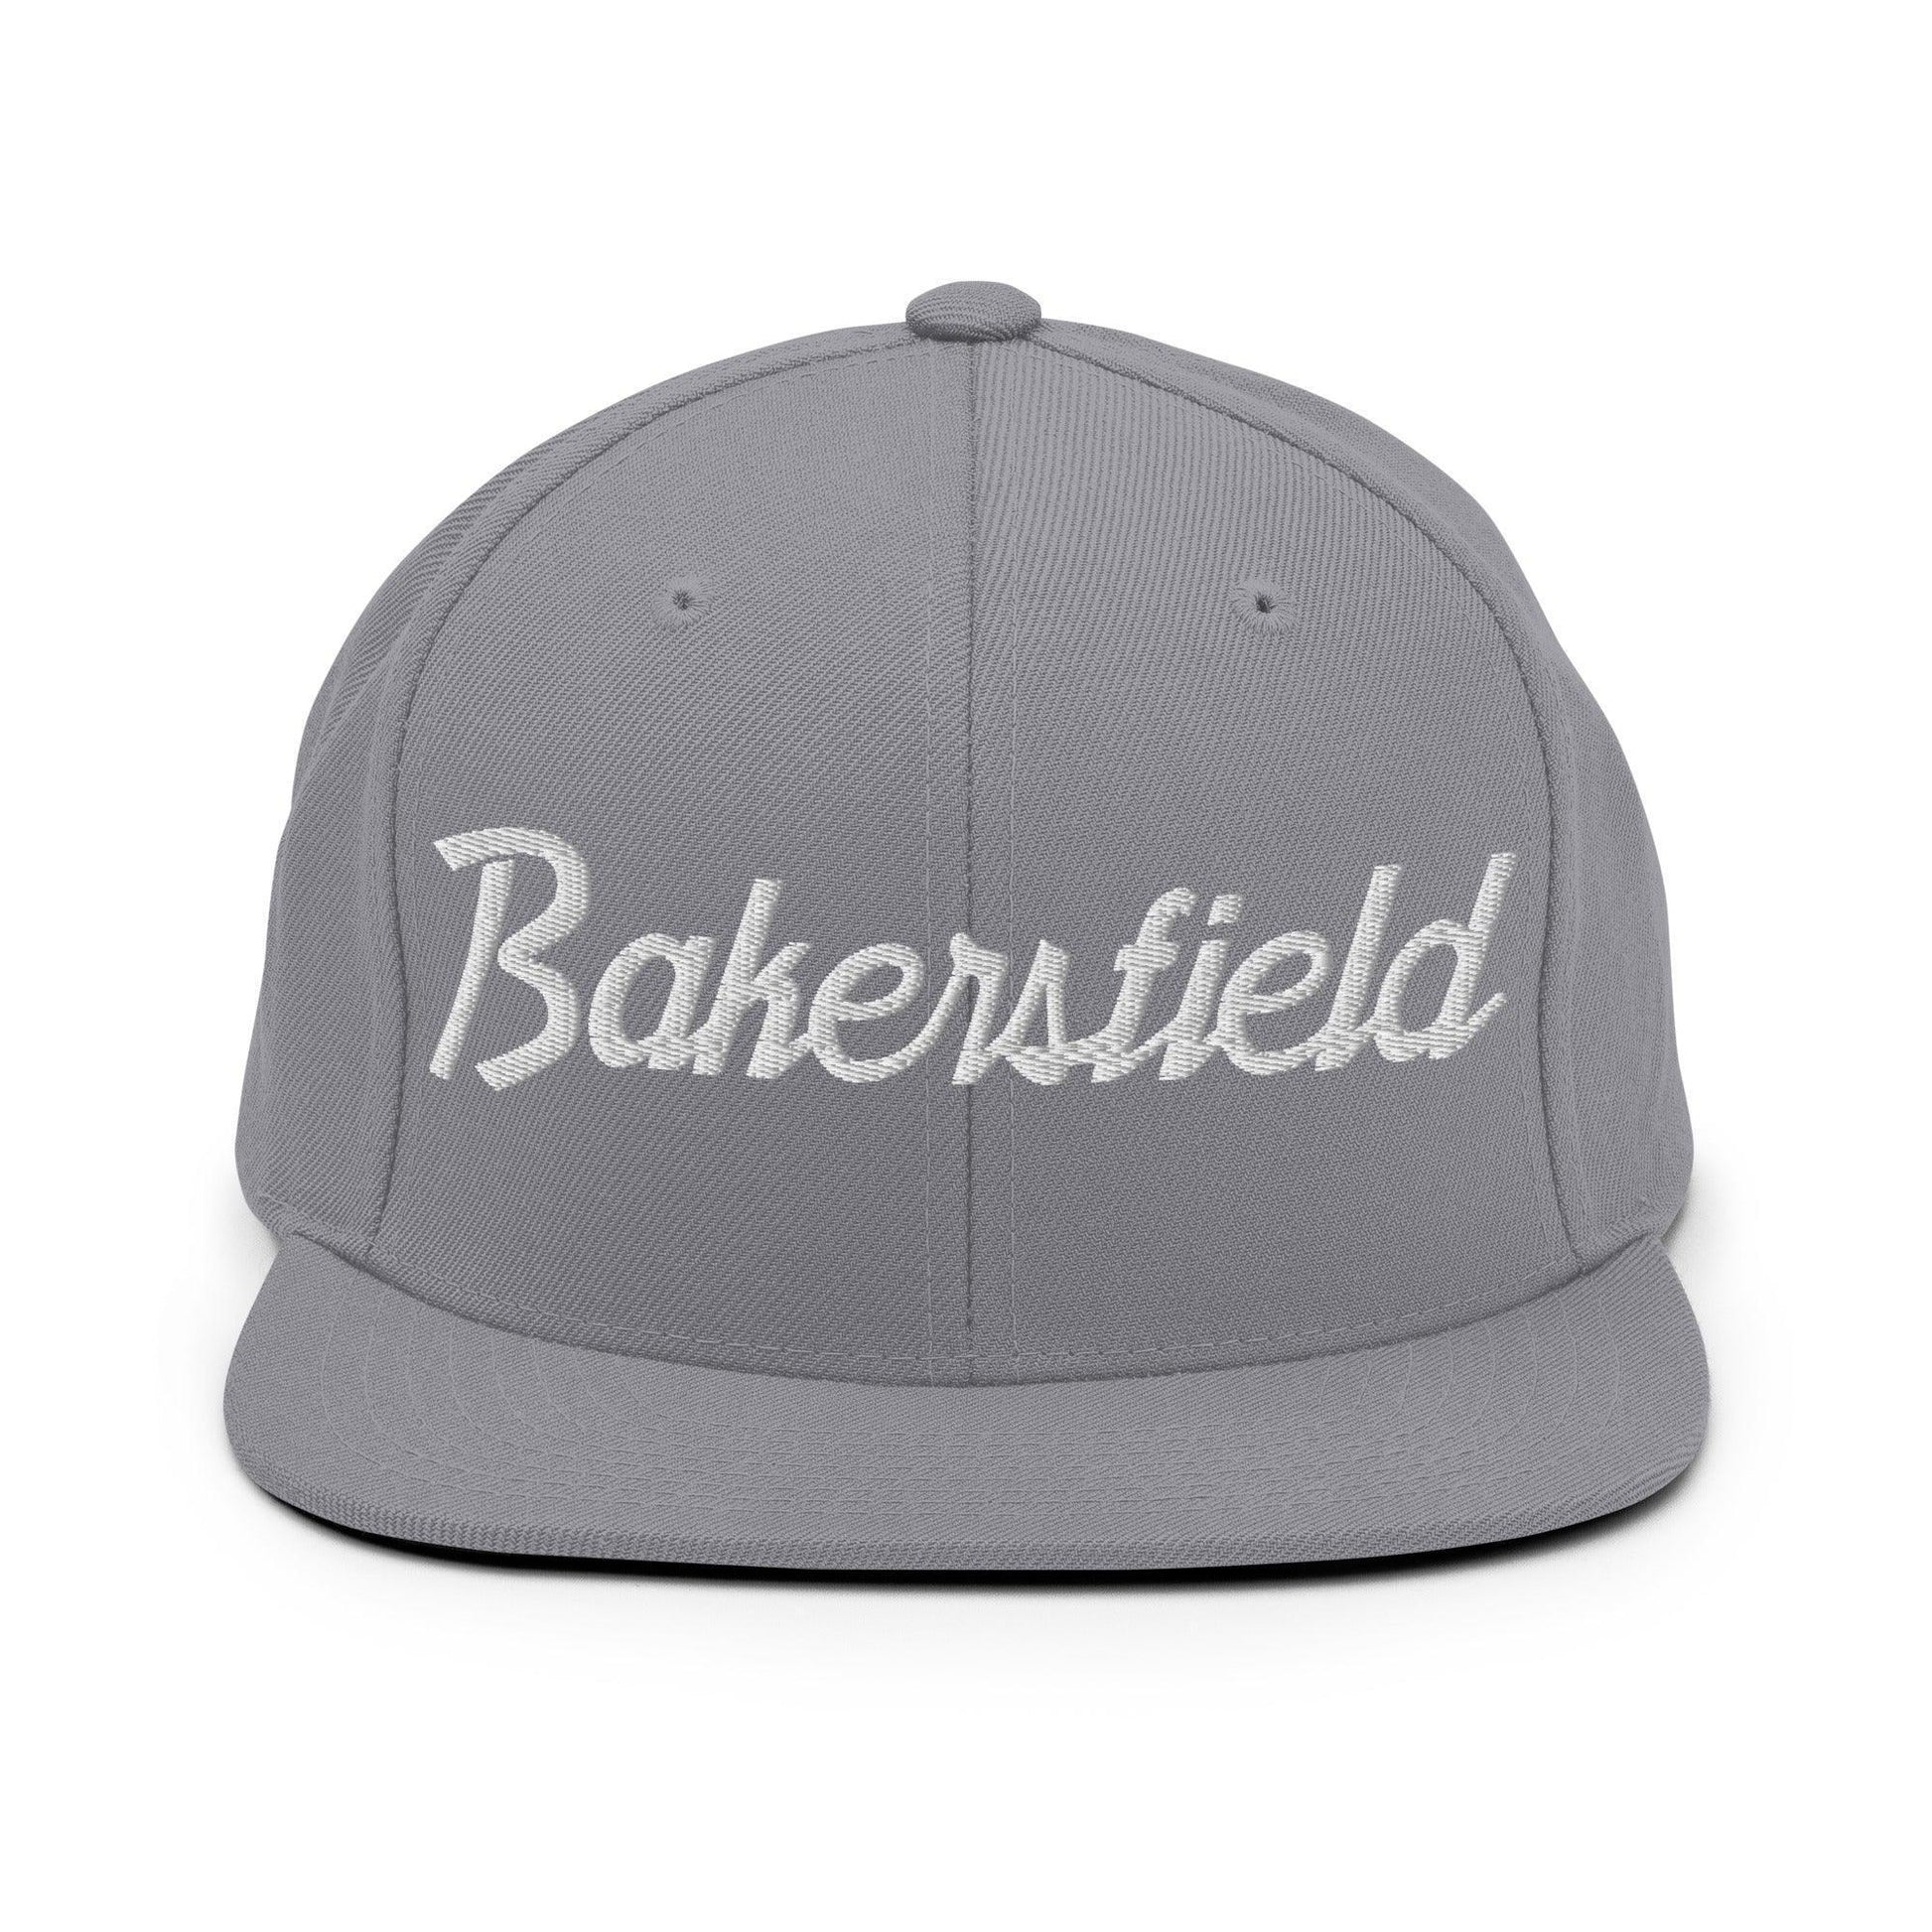 Bakersfield Script Snapback Hat Silver